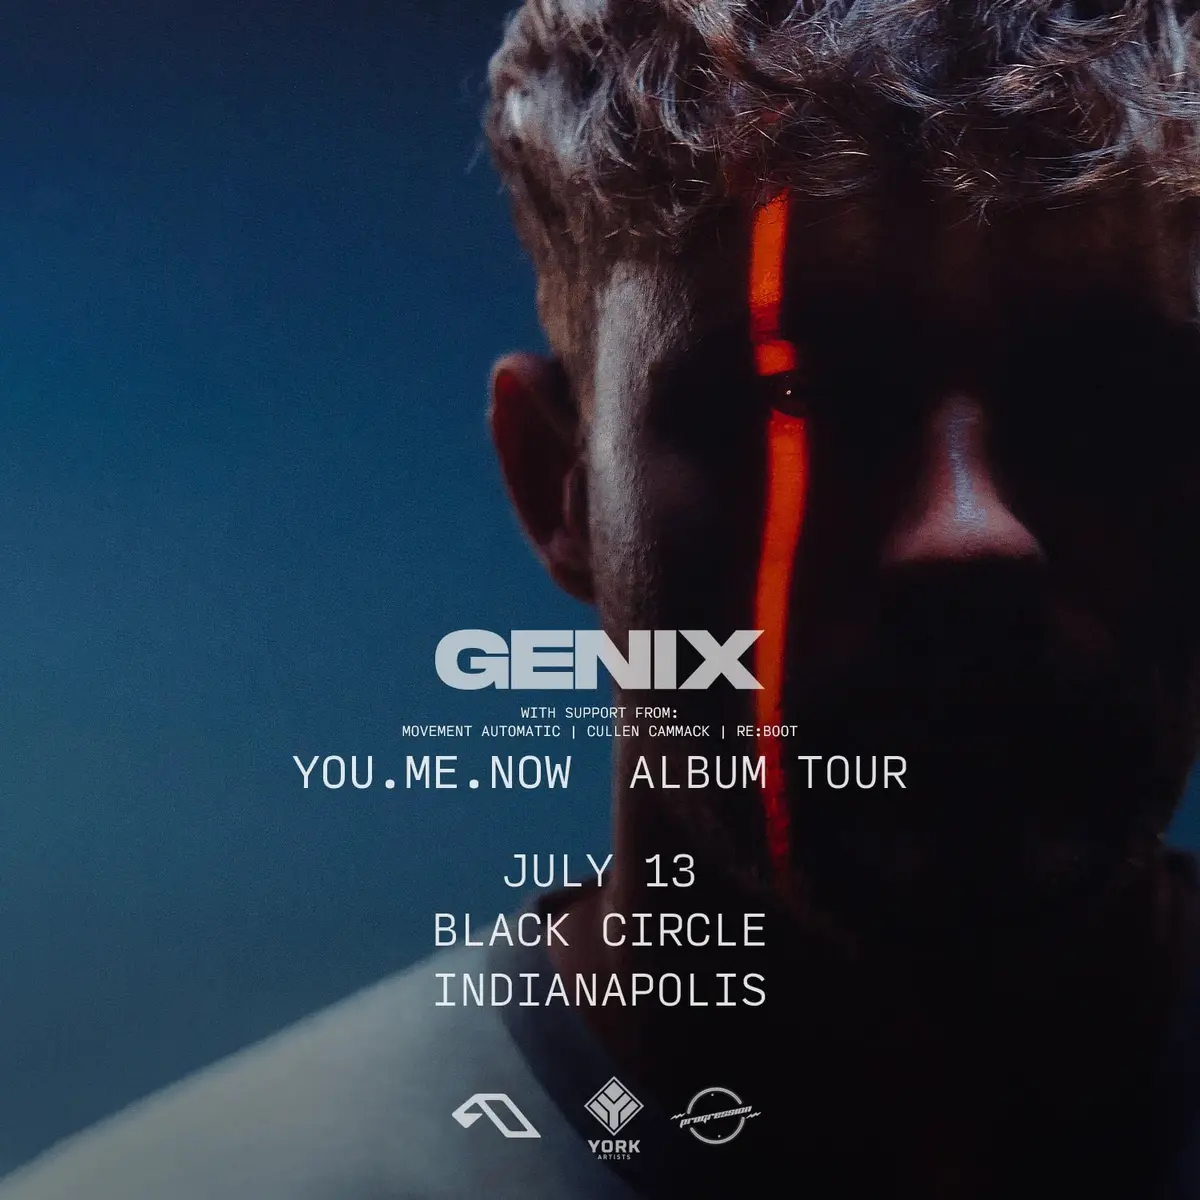 Genix 'YOU.ME.NOW' Album Tour | Black Circle Indianapolis